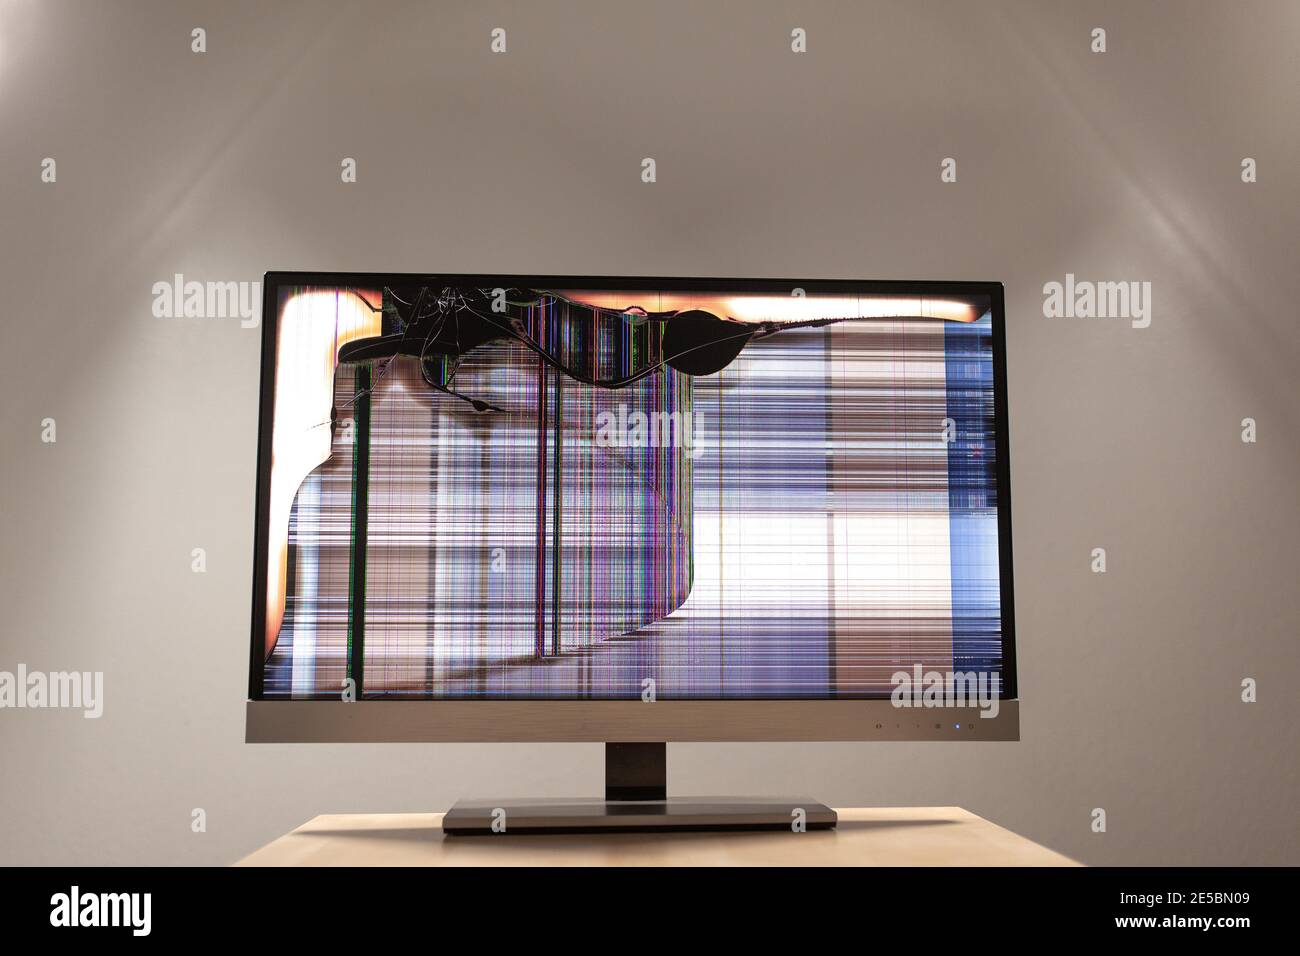 https://c8.alamy.com/compes/2e5bn09/monitor-led-de-ordenador-en-un-escritorio-con-una-grieta-grande-y-lineas-coloridas-que-corren-por-la-pantalla-2e5bn09.jpg